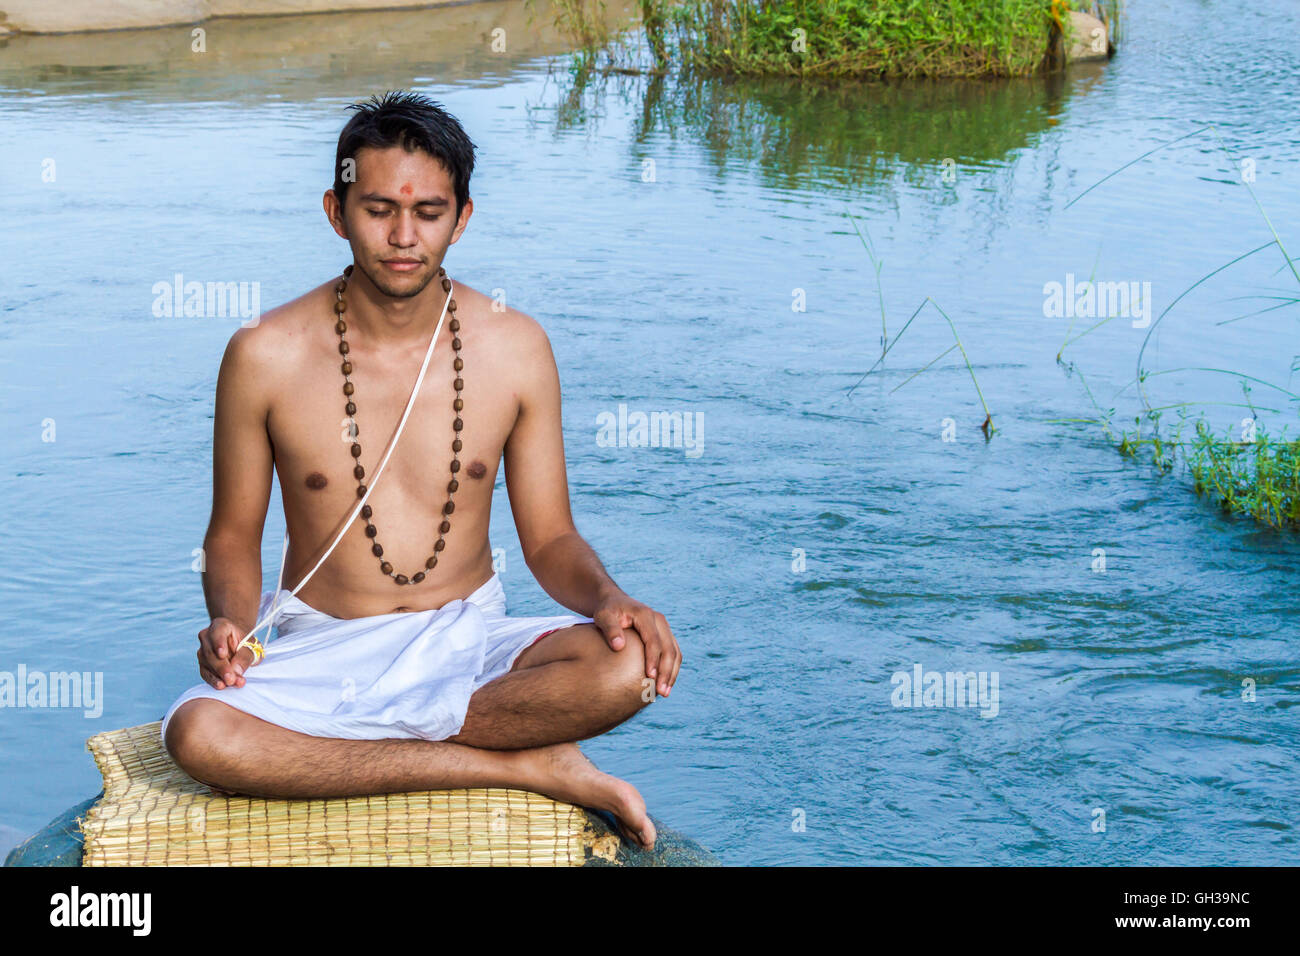 Un jeune prêtre hindou (brahmane) se trouve dans la méditation au bord de la rivière. Banque D'Images